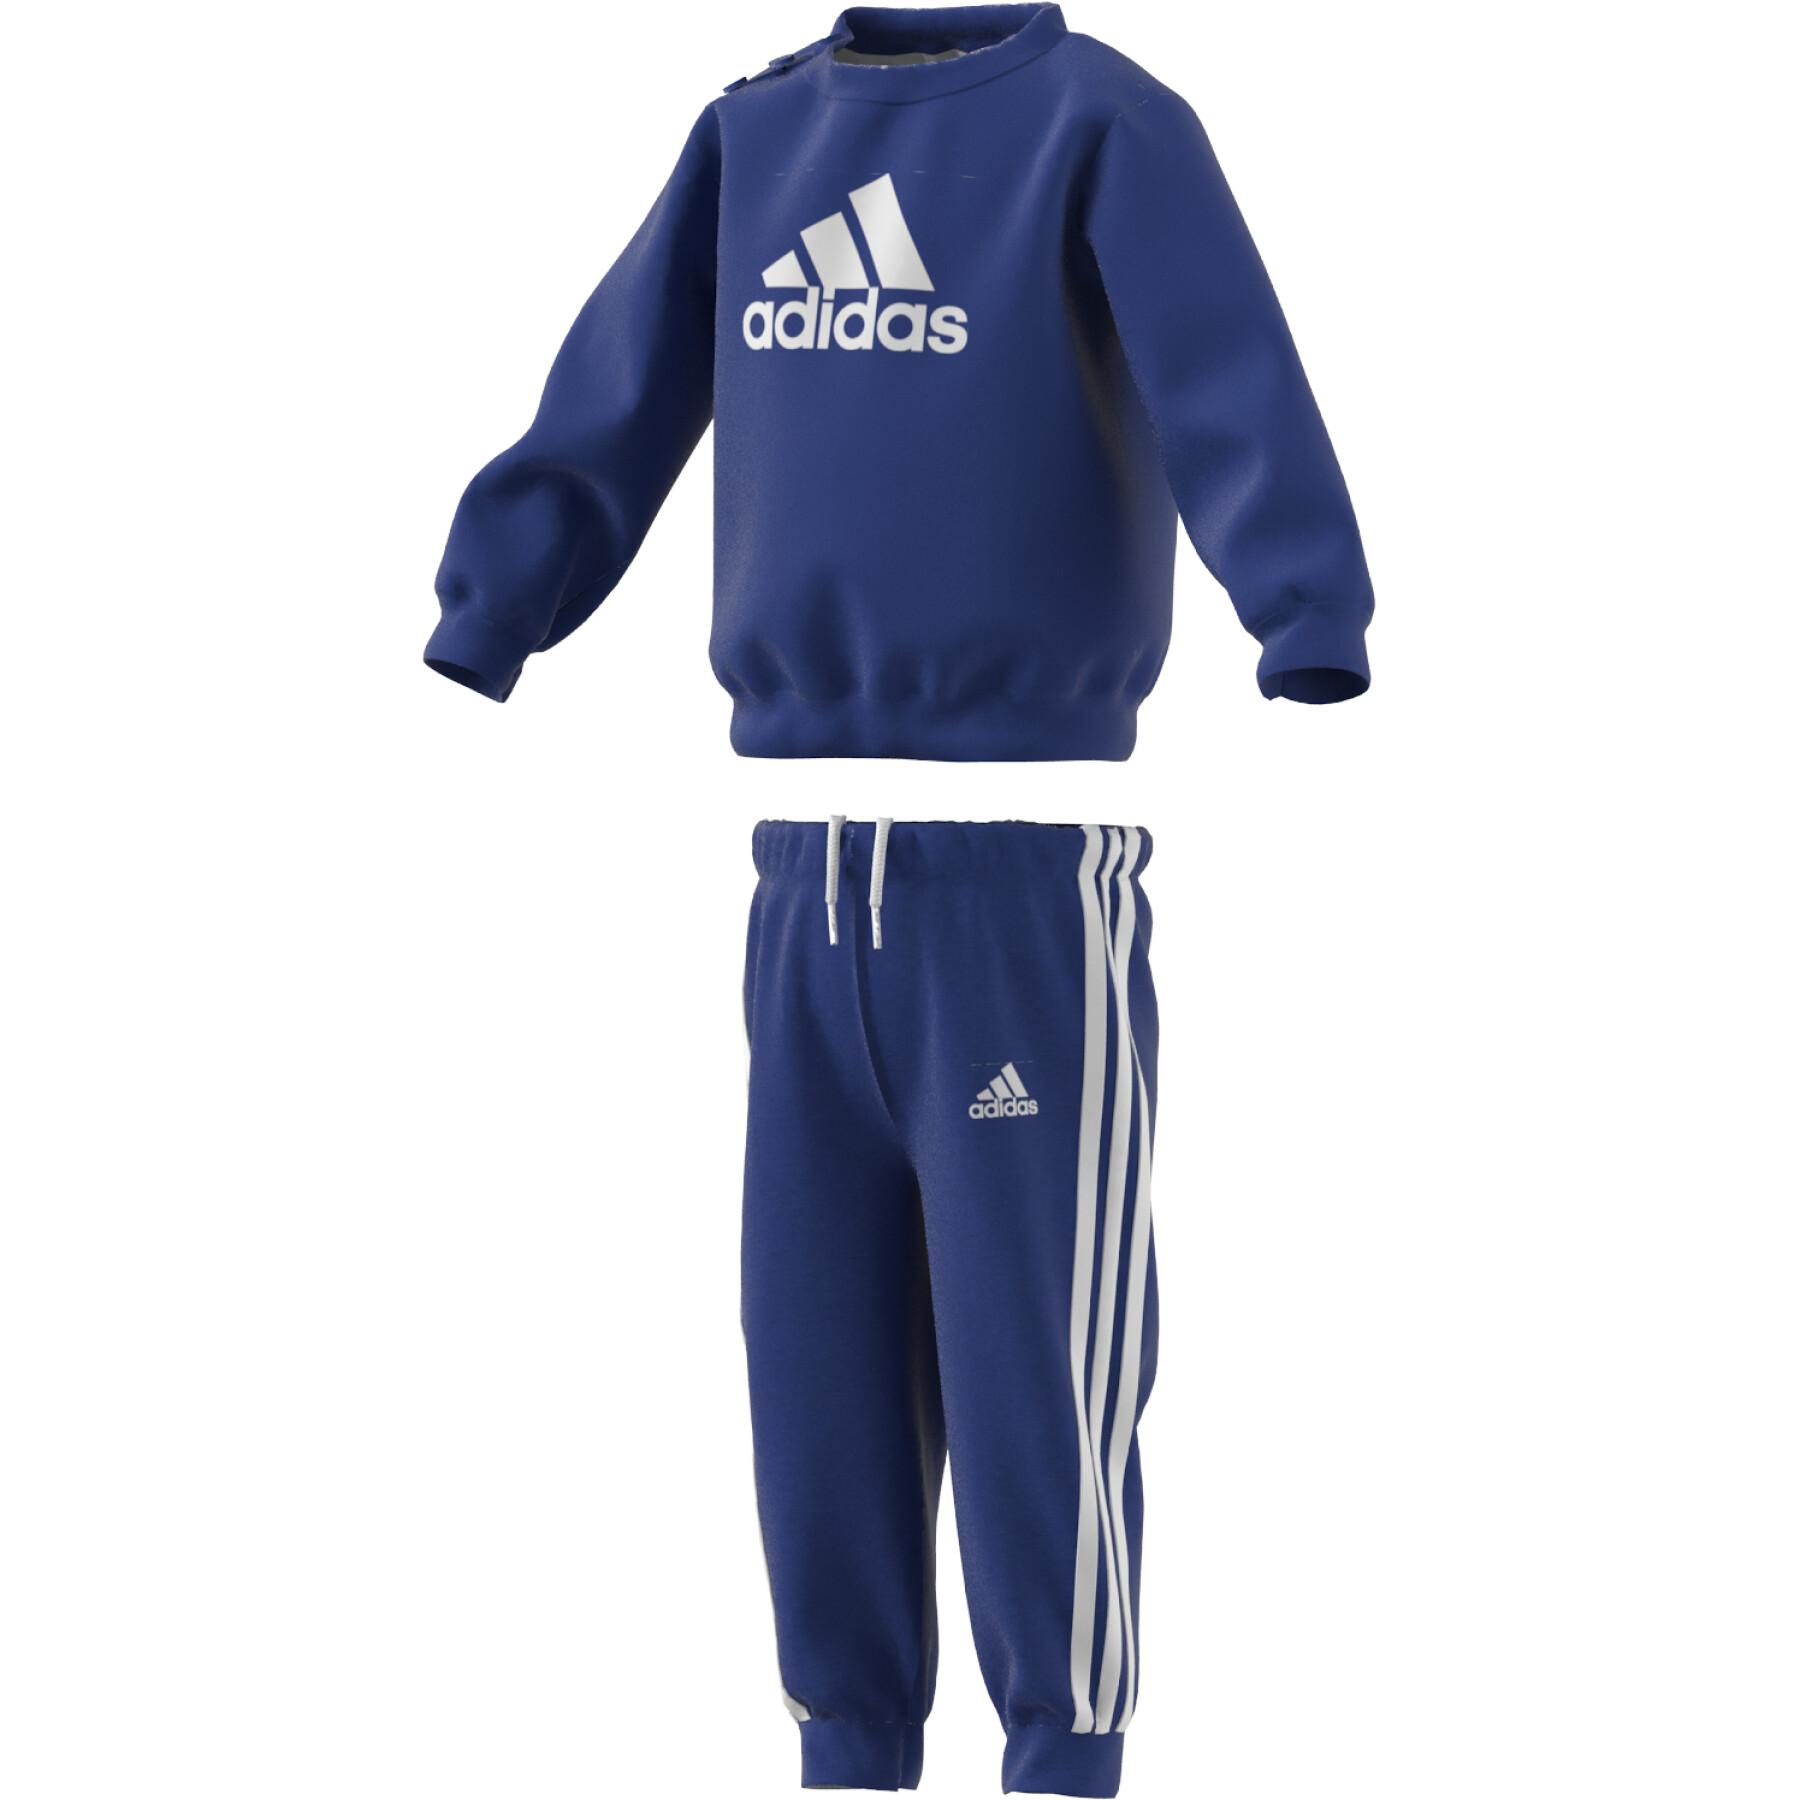 ensemble de jogging bebe garcon bicolore - adidas bleu pantalons garcon